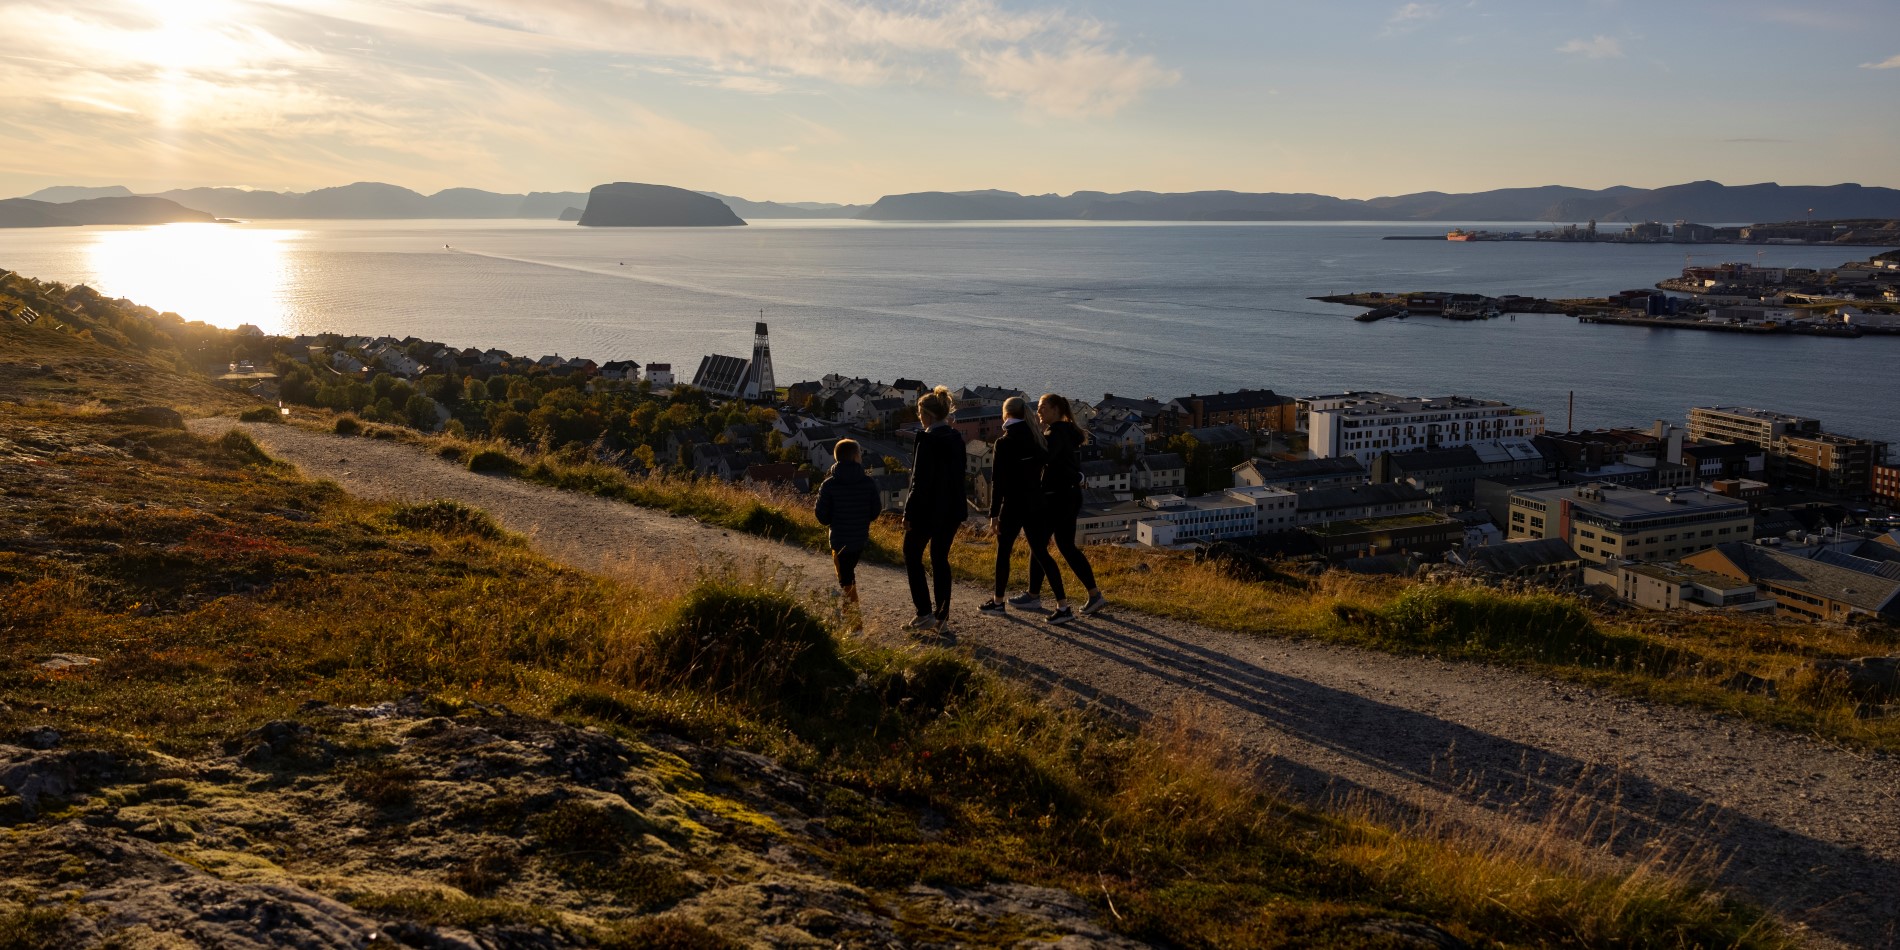 Det er solnedgang, og fire mennesker går på fjeldsiden. Under dem kan man se Hammerfest